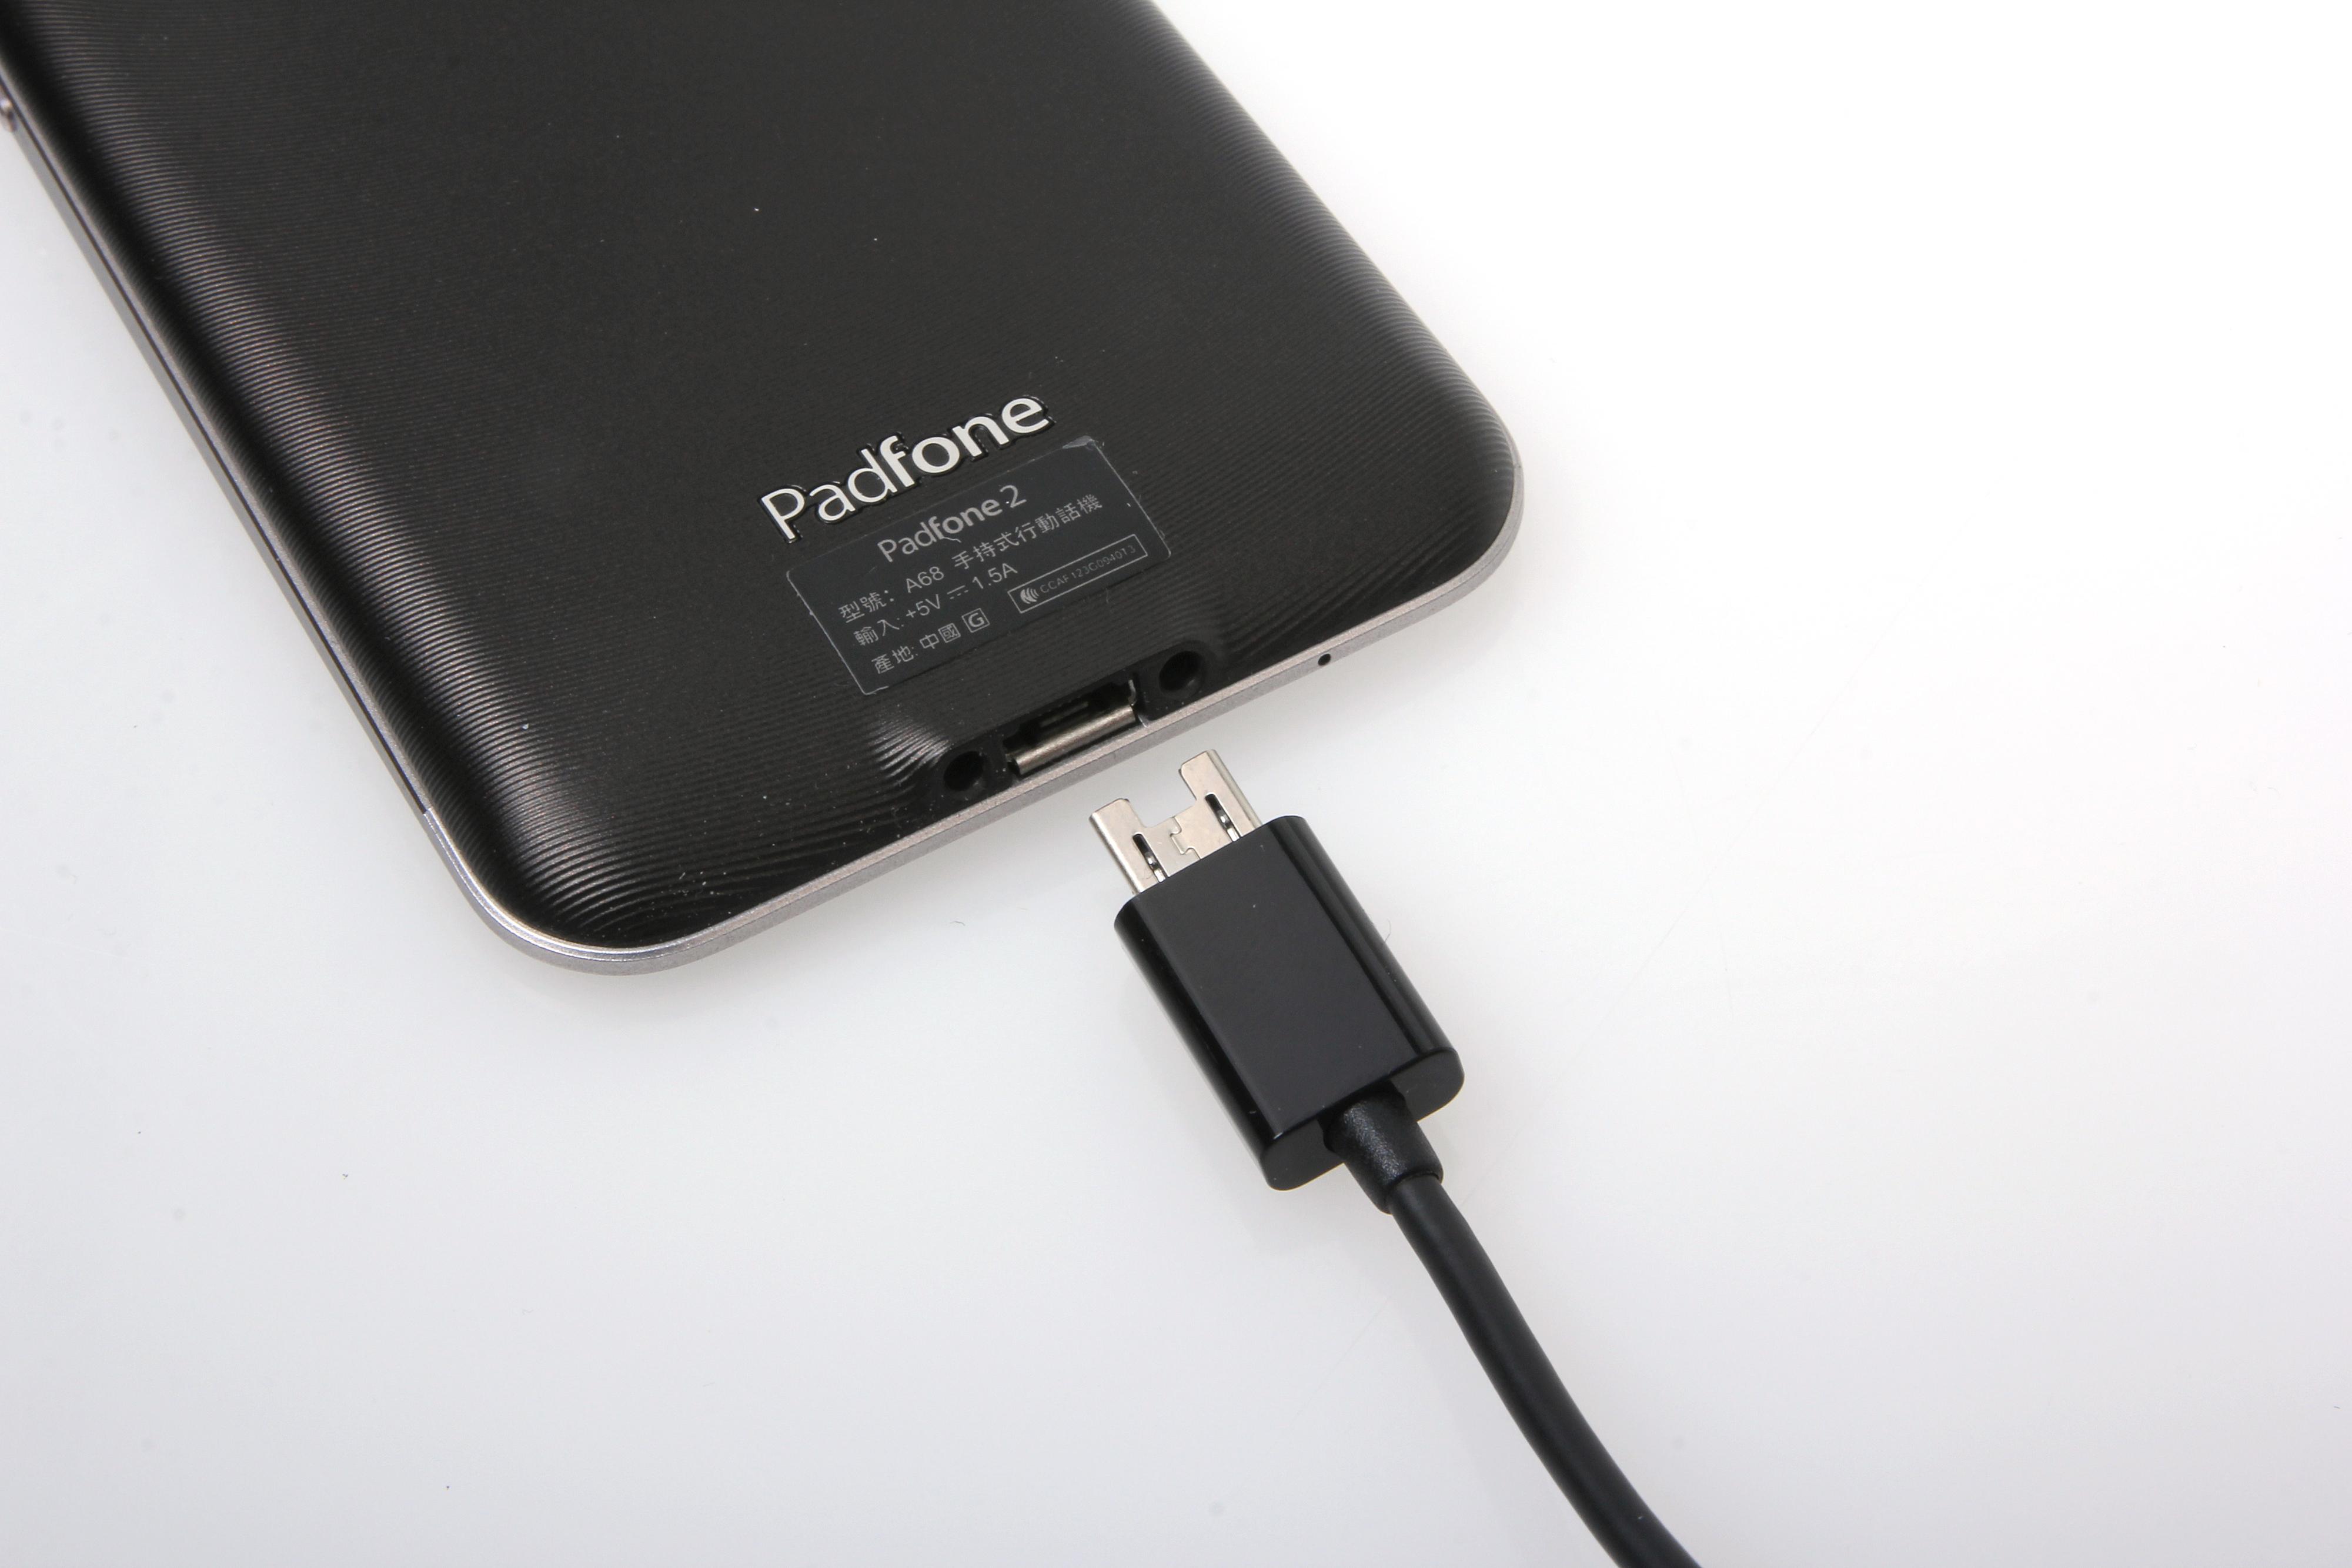 PadFone 2 bruker en 13-pinners USB-kontakt for å kunne støtte overføring av bilde til nettbrett-skjermen. Men det går an å bruke en vanlig Micro-USB-kontakt også, selv om pluggen blir sittende litt løst.Foto: Kurt Lekanger, Amobil.no